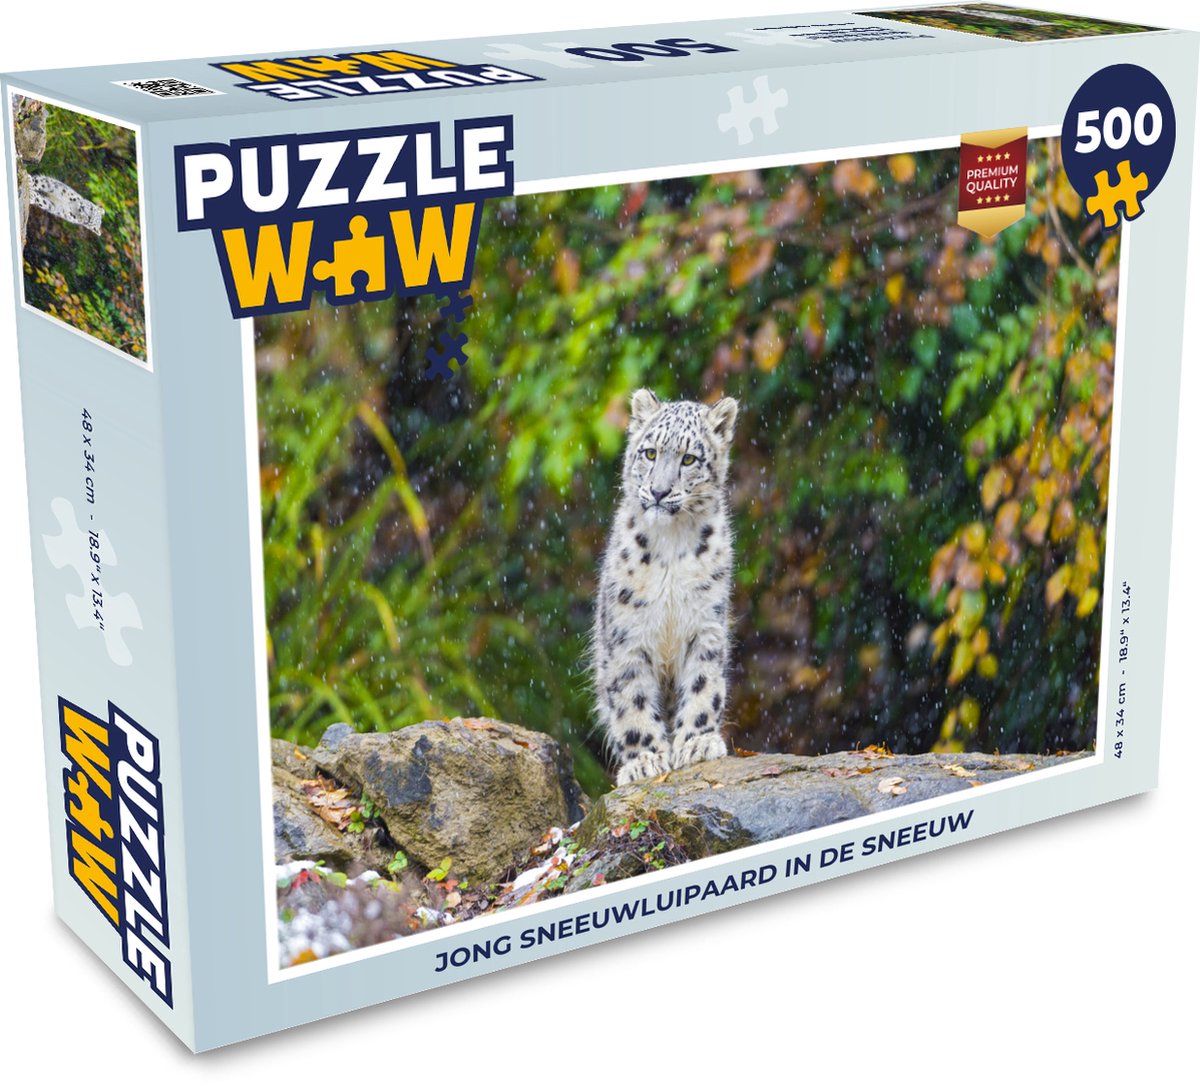 Afbeelding van product Puzzel 500 stukjes Sneeuwluipaard - Jong sneeuwluipaard in de sneeuw - PuzzleWow heeft +100000 puzzels